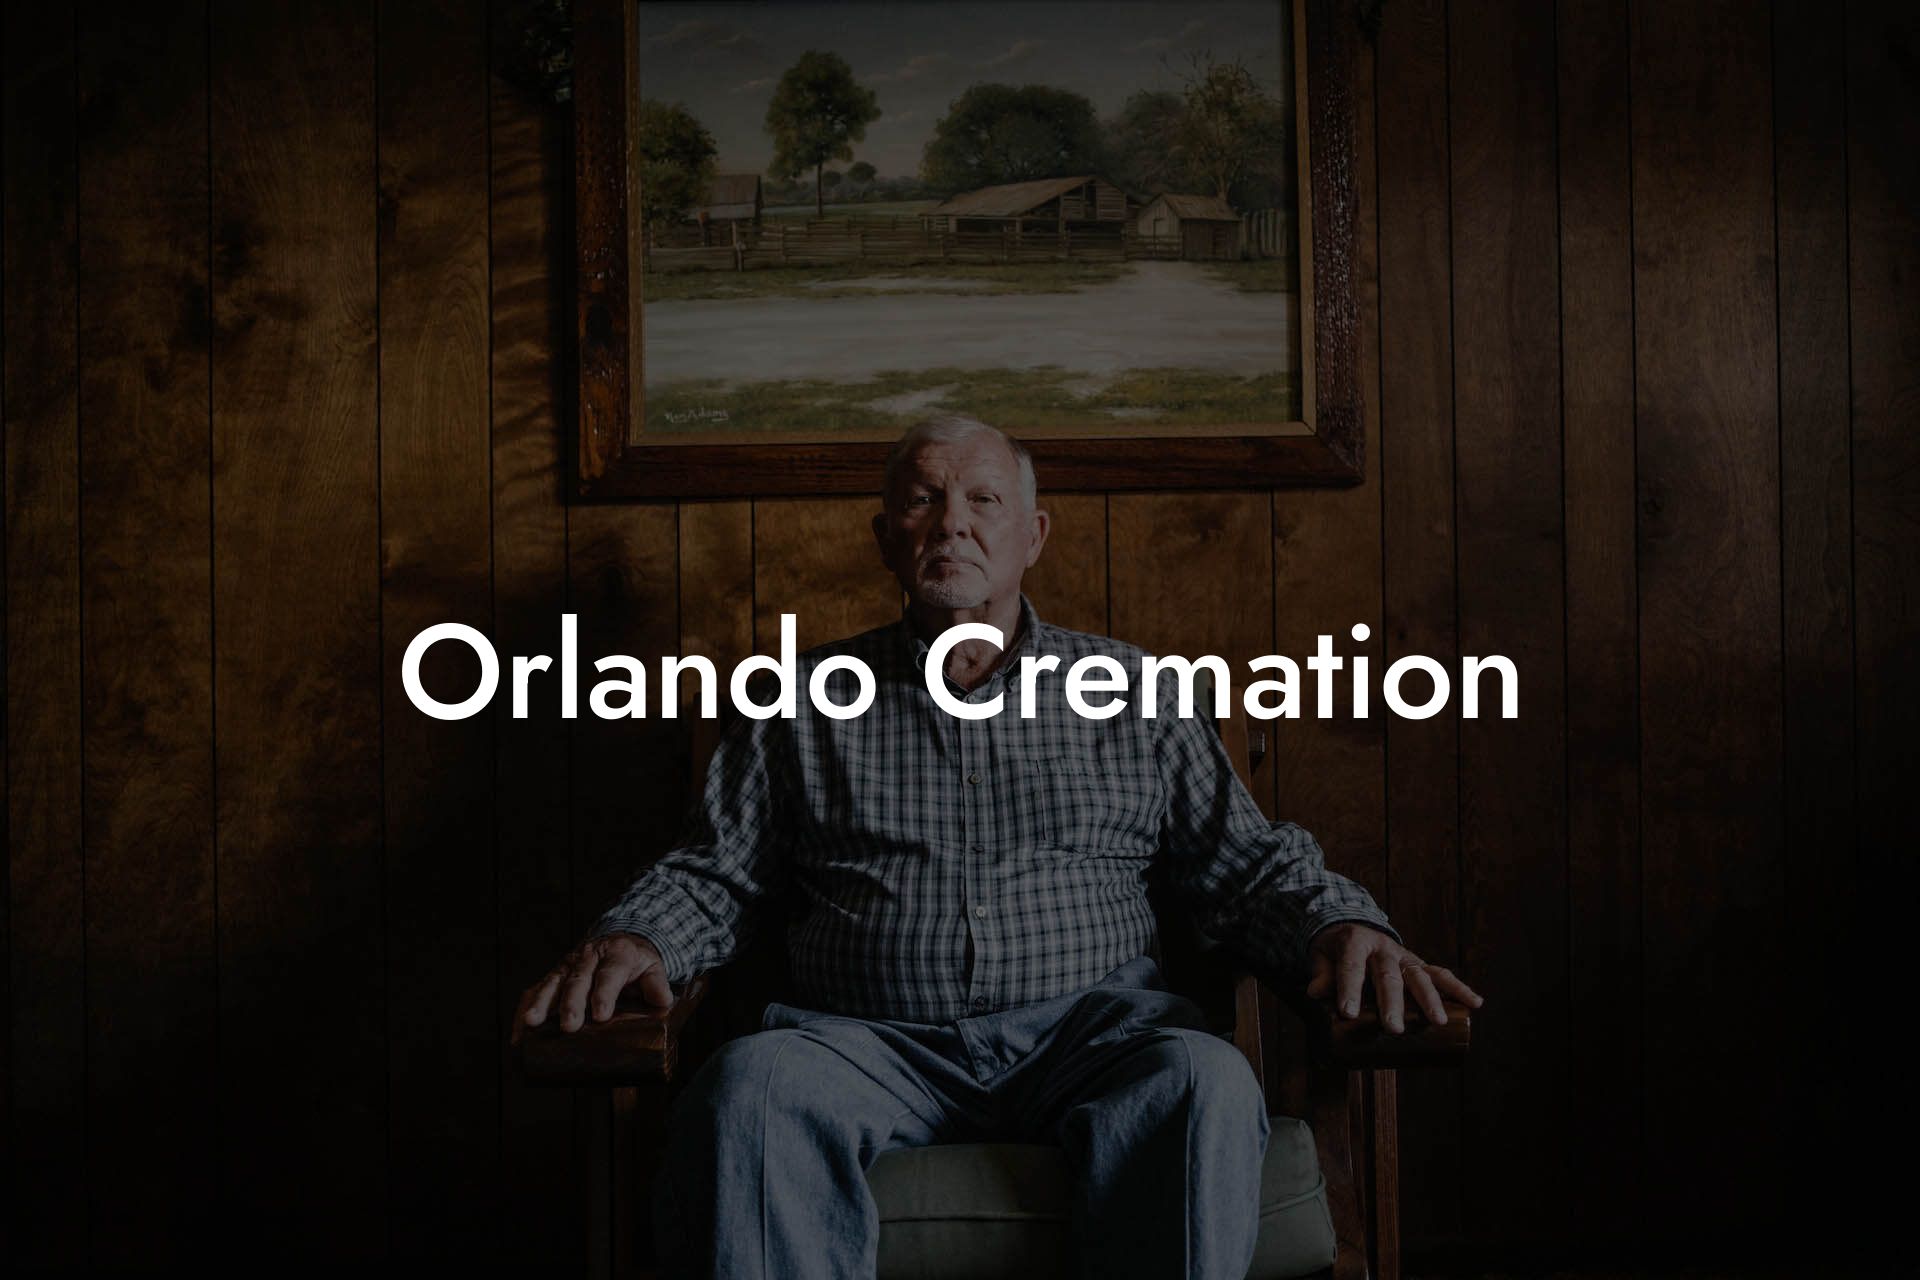 Orlando Cremation